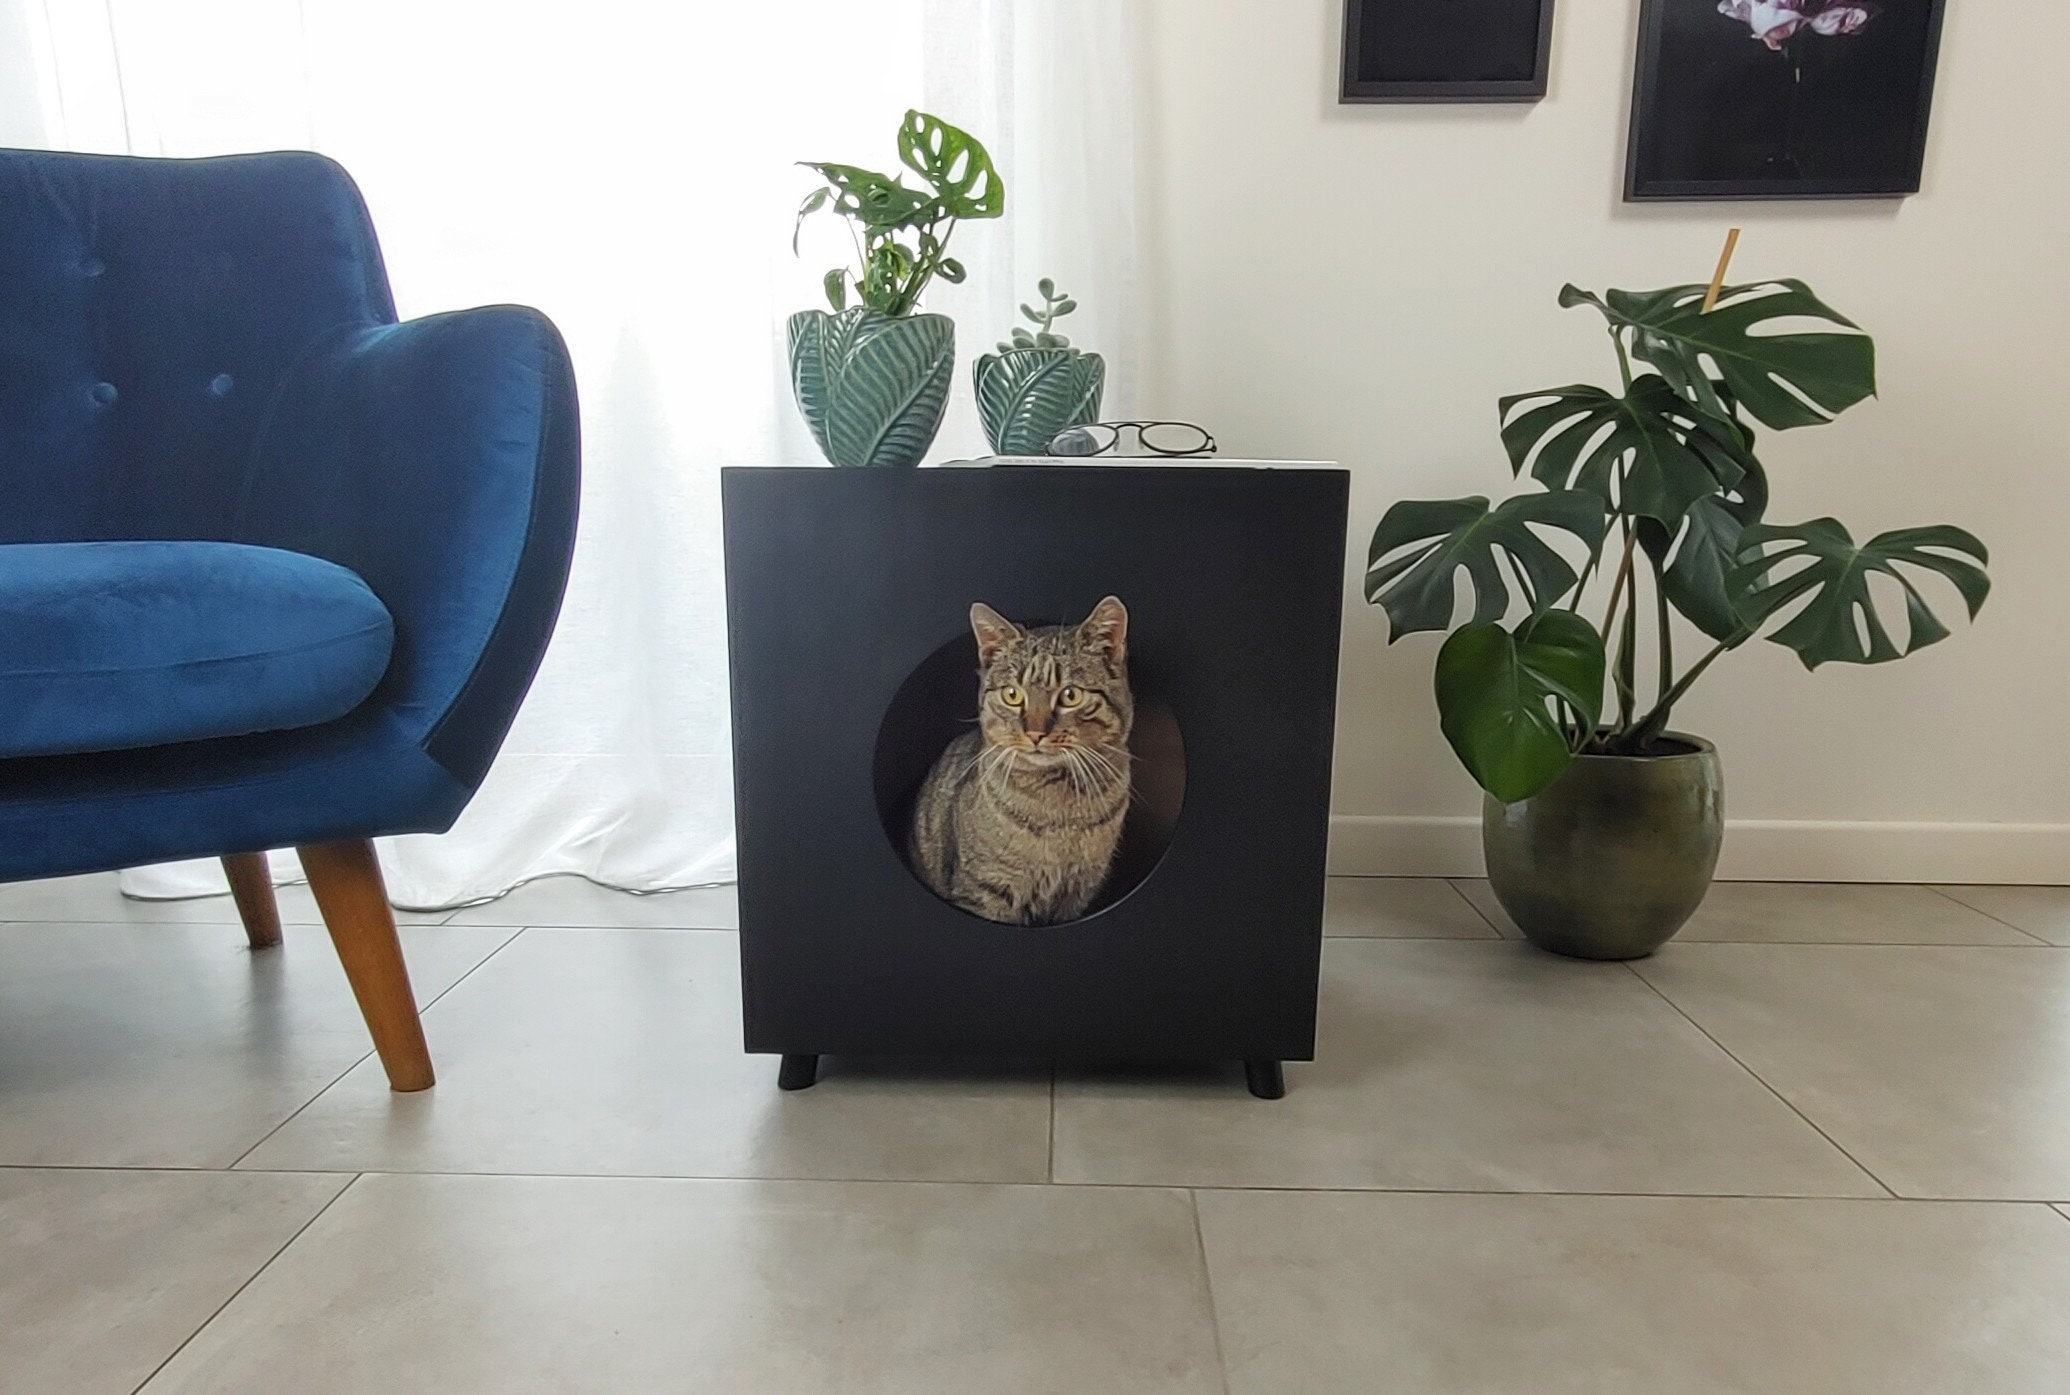 CONFO® Sac poubelle bac à litière pour chat spécial pour toilette